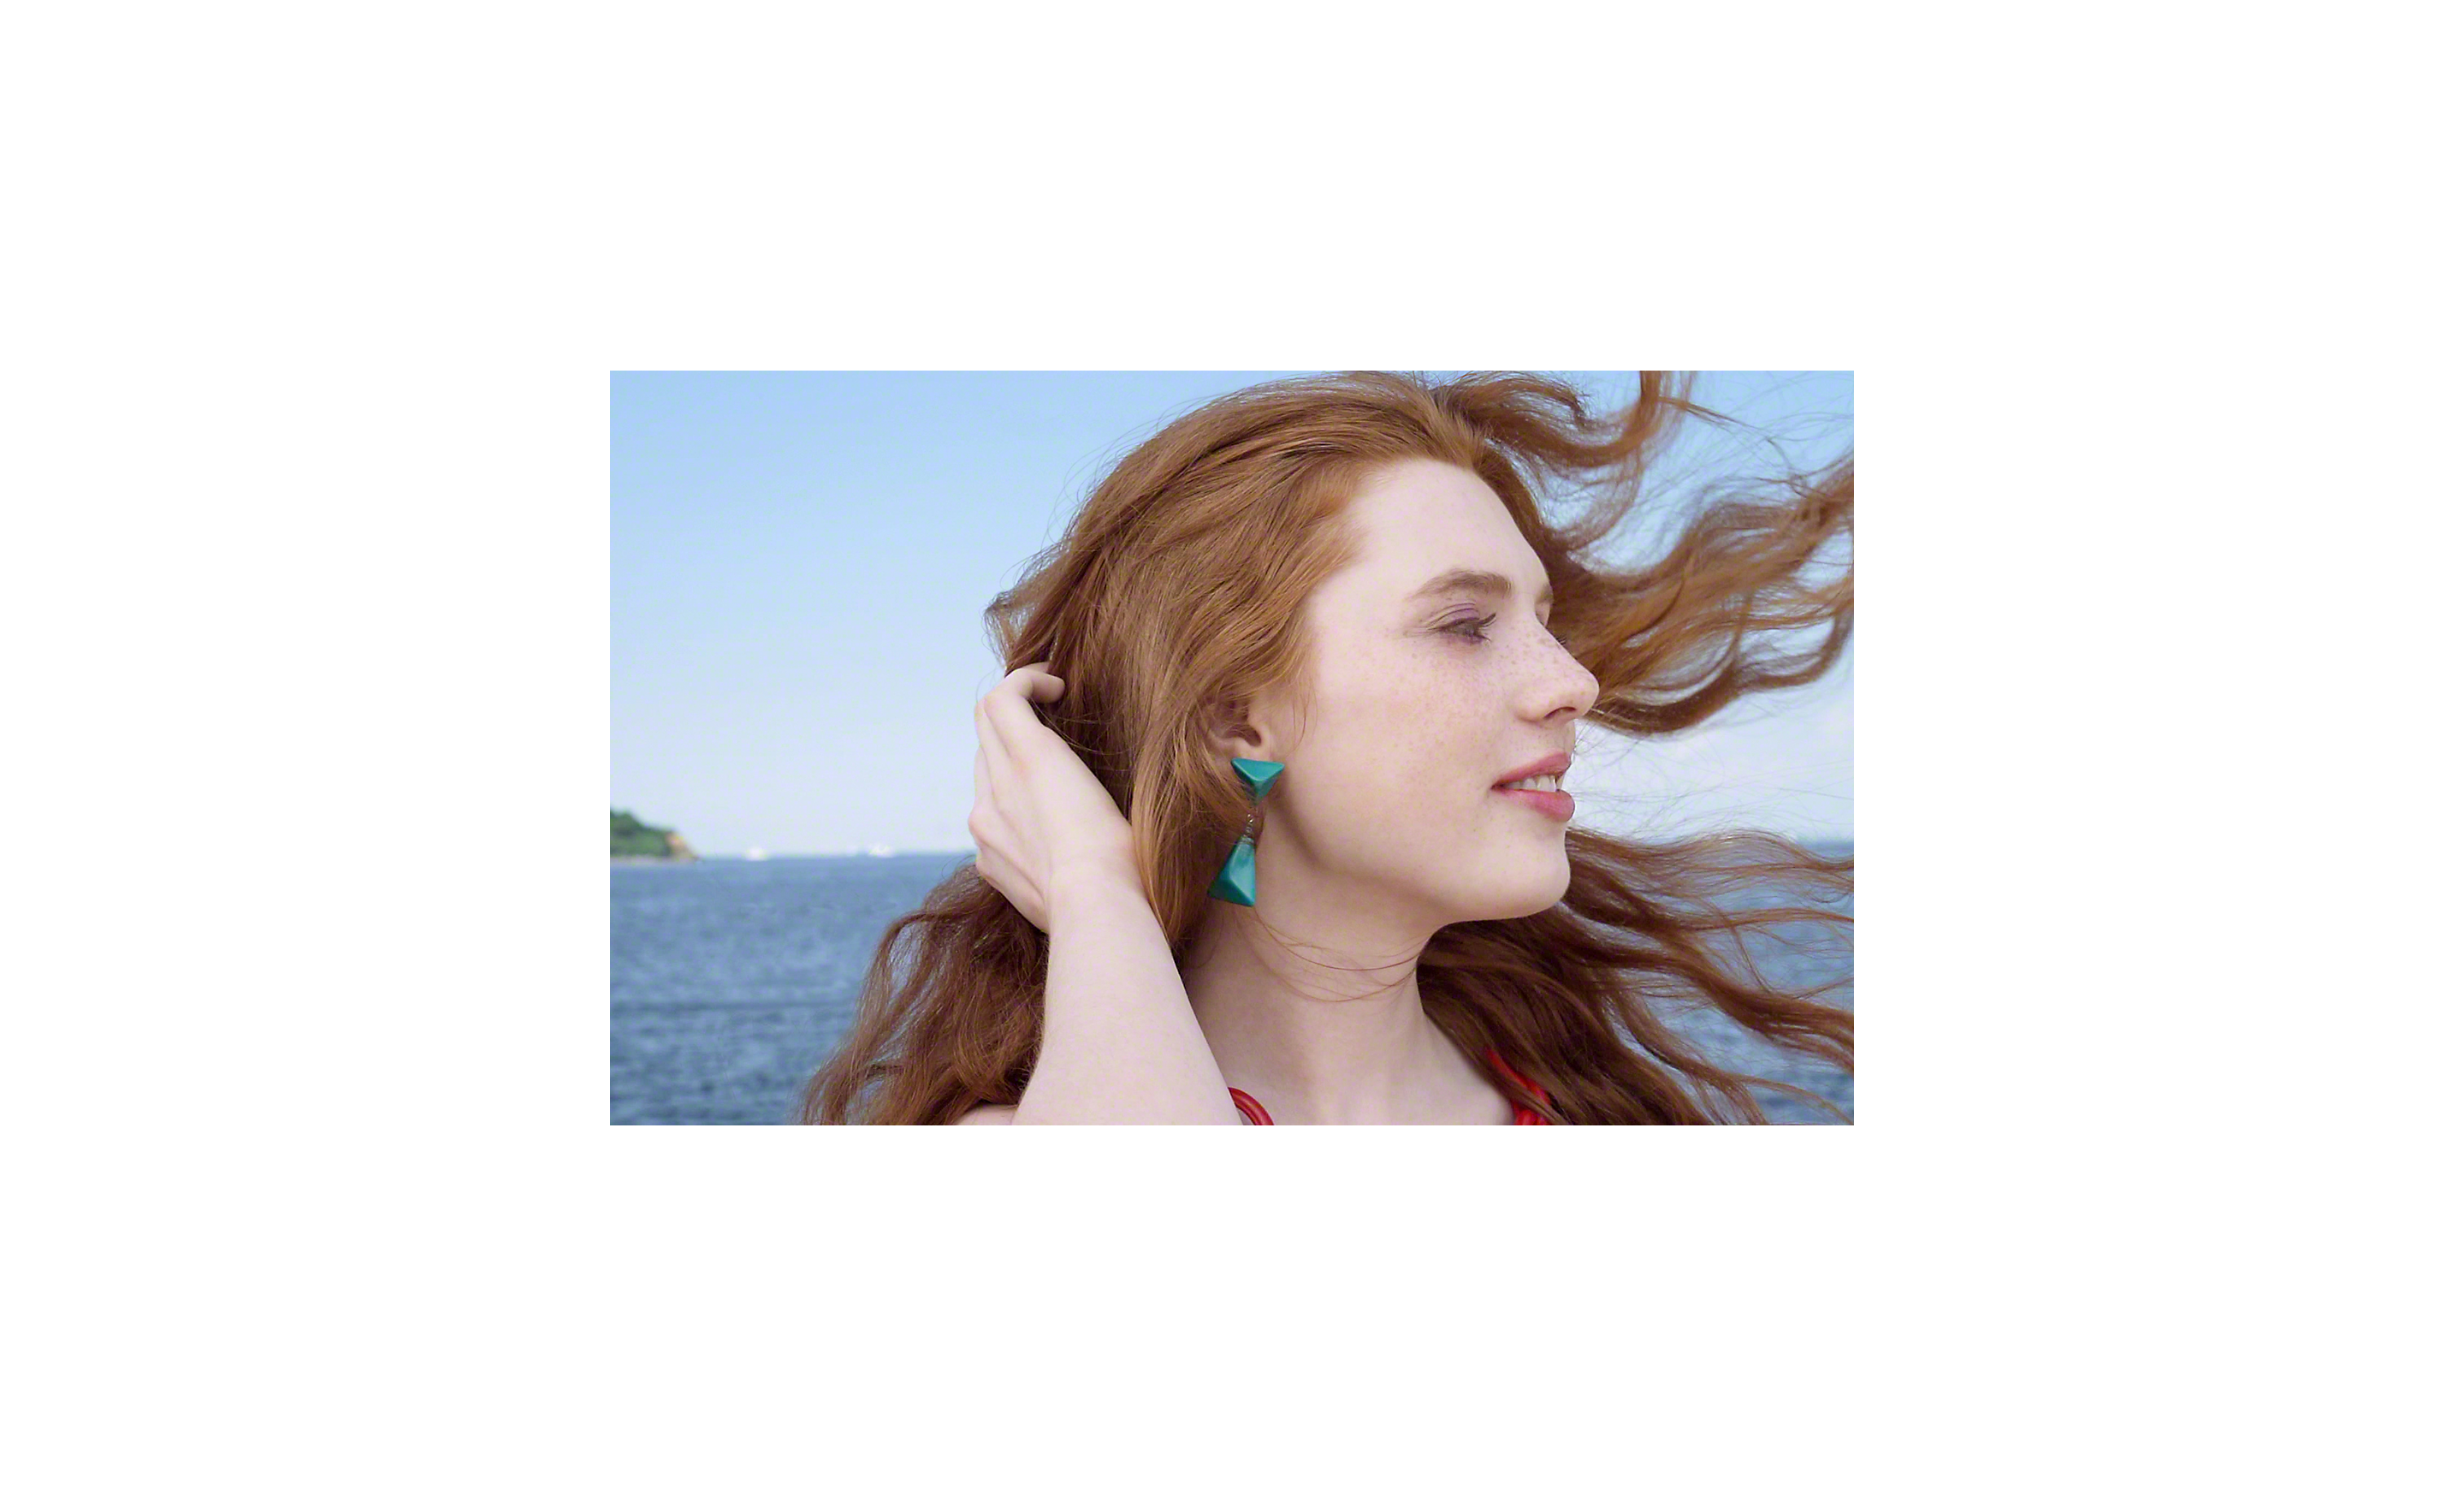 Közelkép egy nőről, ahogy fújja a haját a szél, a háttérben tengeri táj